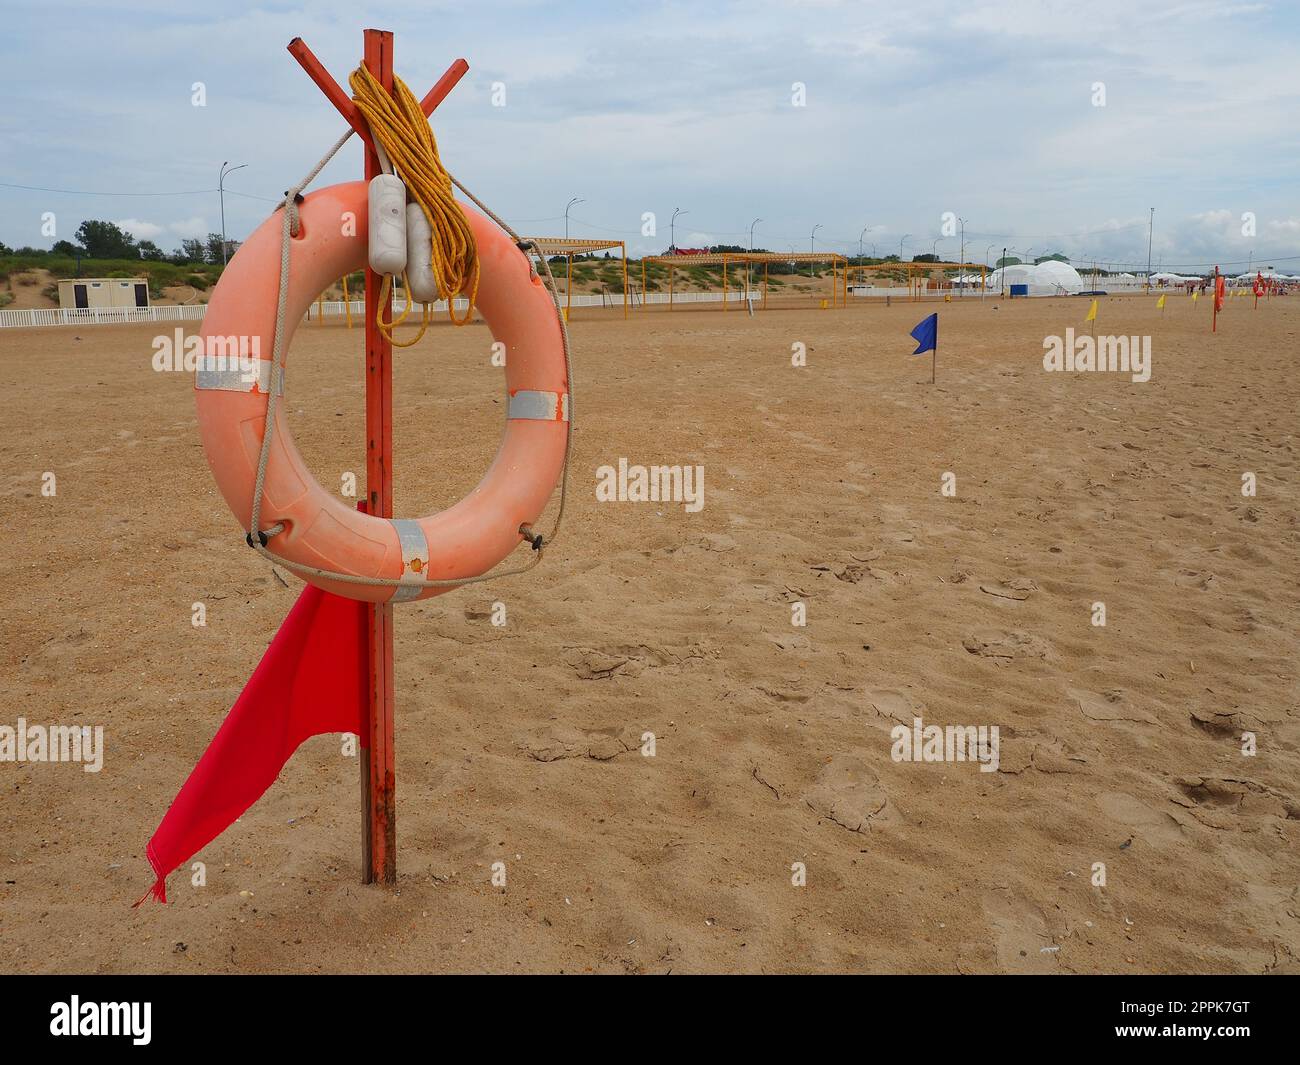 Anapa, Russie, 10 août 2021 bouée de sauvetage avec un drapeau rouge sur une plage de sable. Bouée de sauvetage orange sur un poteau pour sauver des personnes noyées dans la mer. Point de sauvetage sur le rivage. Temps orageux sur la mer Noire Banque D'Images